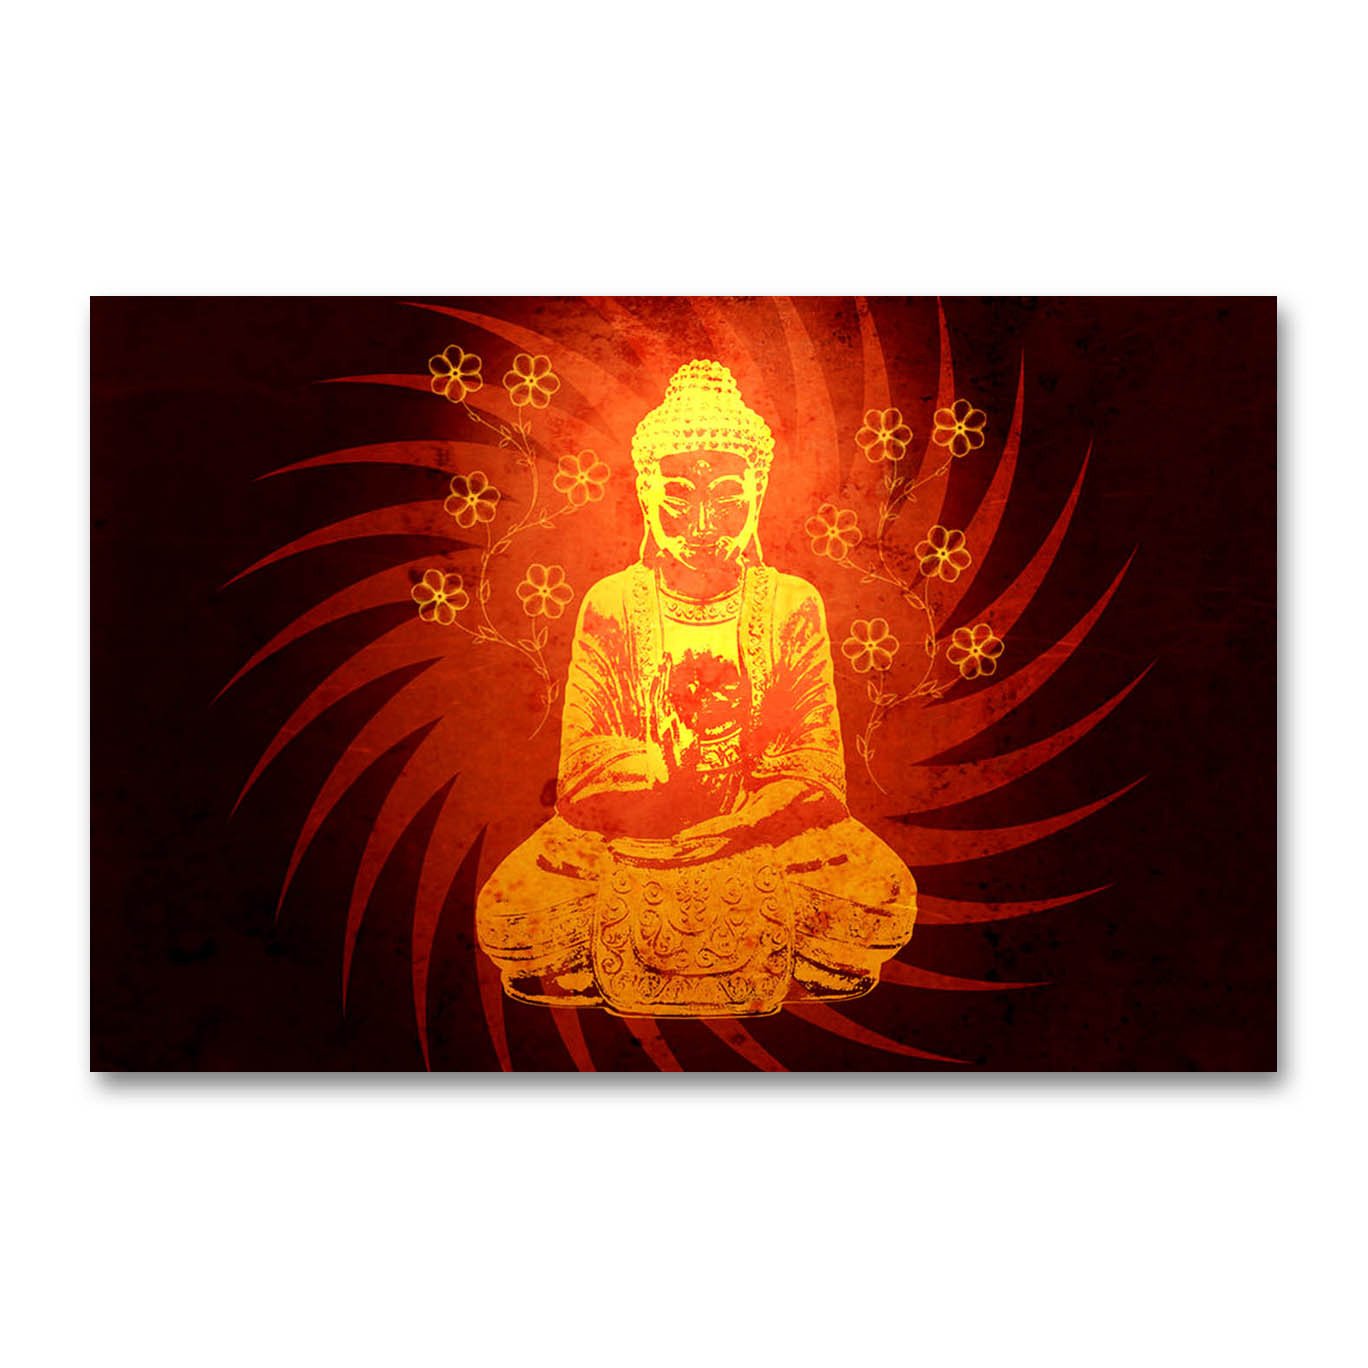 Budda at Peace